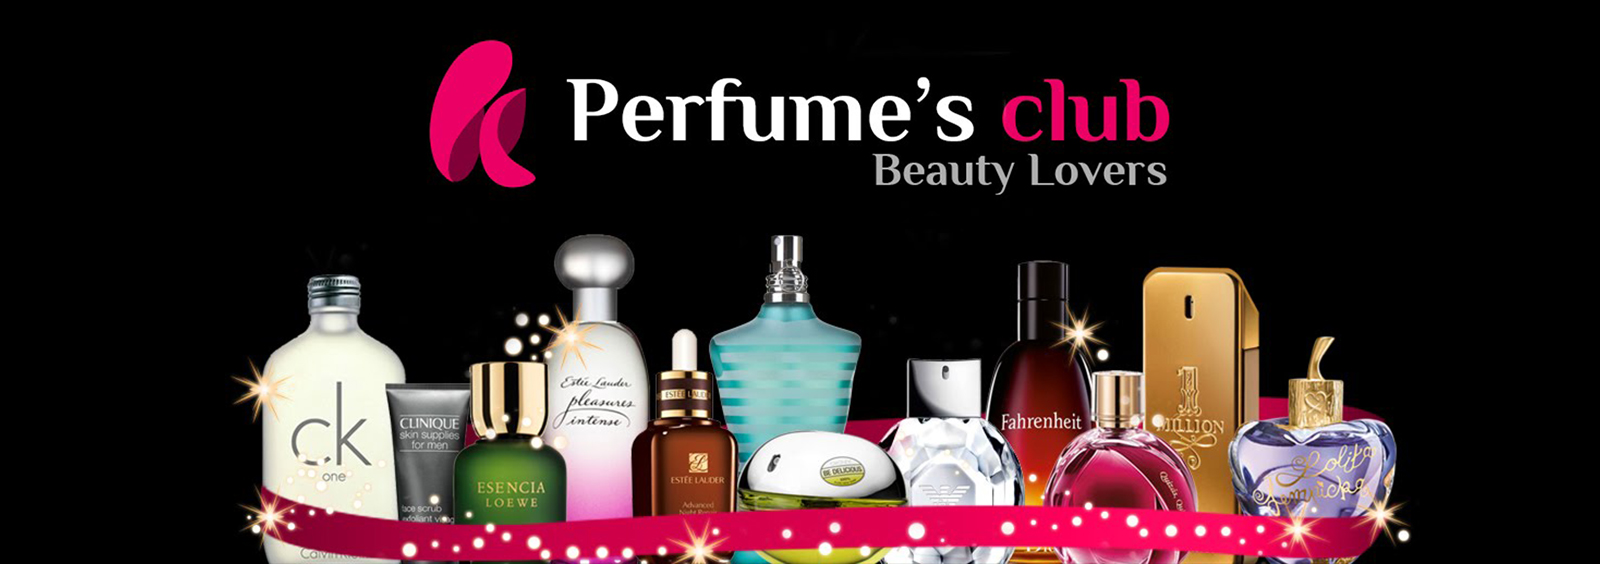 Perfumes Club - Perfumes Club